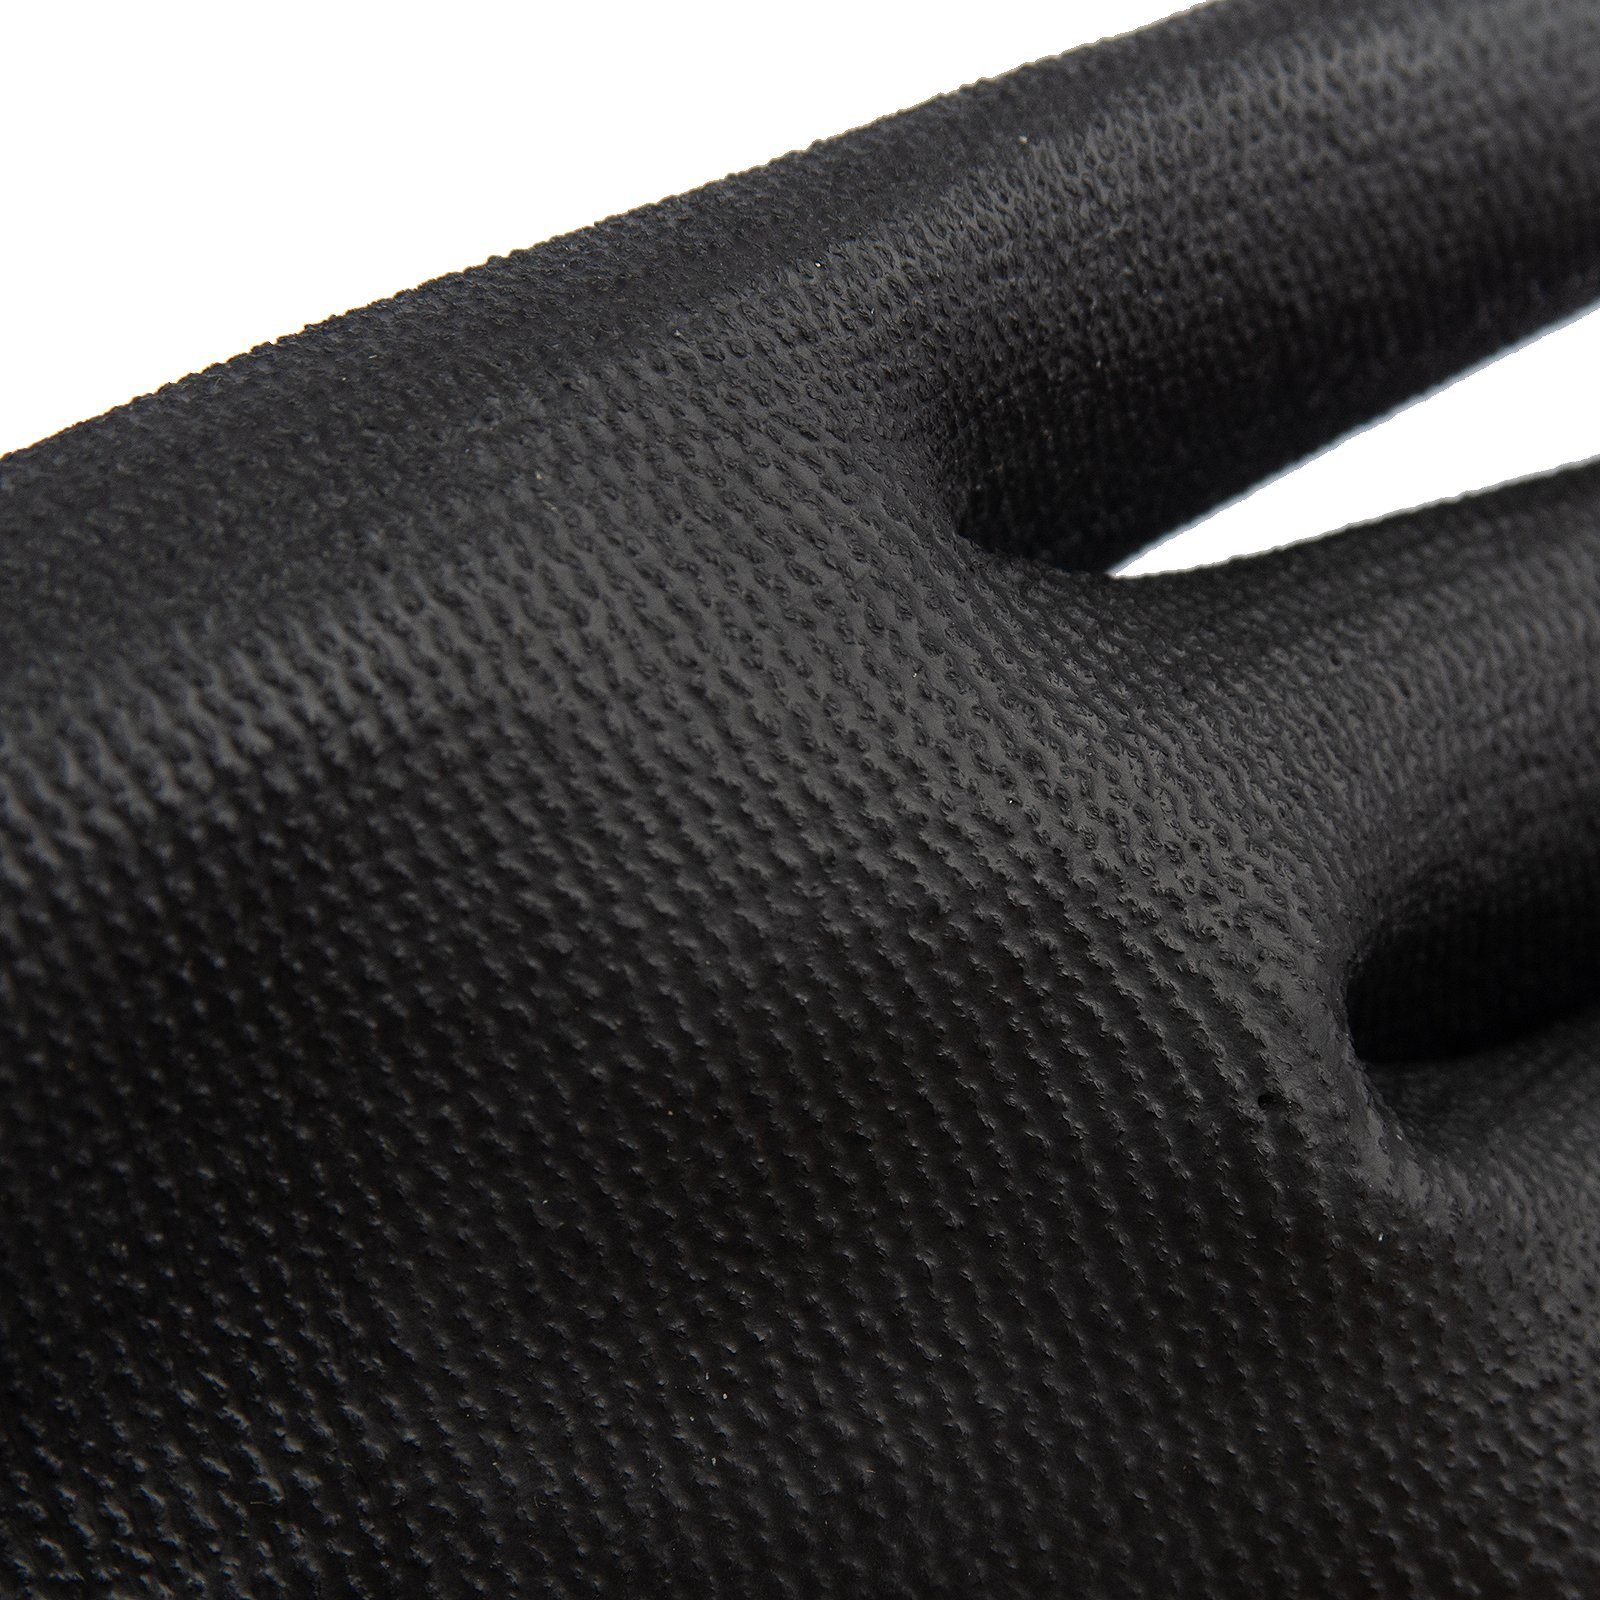 Polyester, Montagehandschuh Schutzhandschuh (Nr.7) grün Polyurethan Größe 12 S Midori Beschichtet Schwarz Arbeitshandschuh-Set Paar